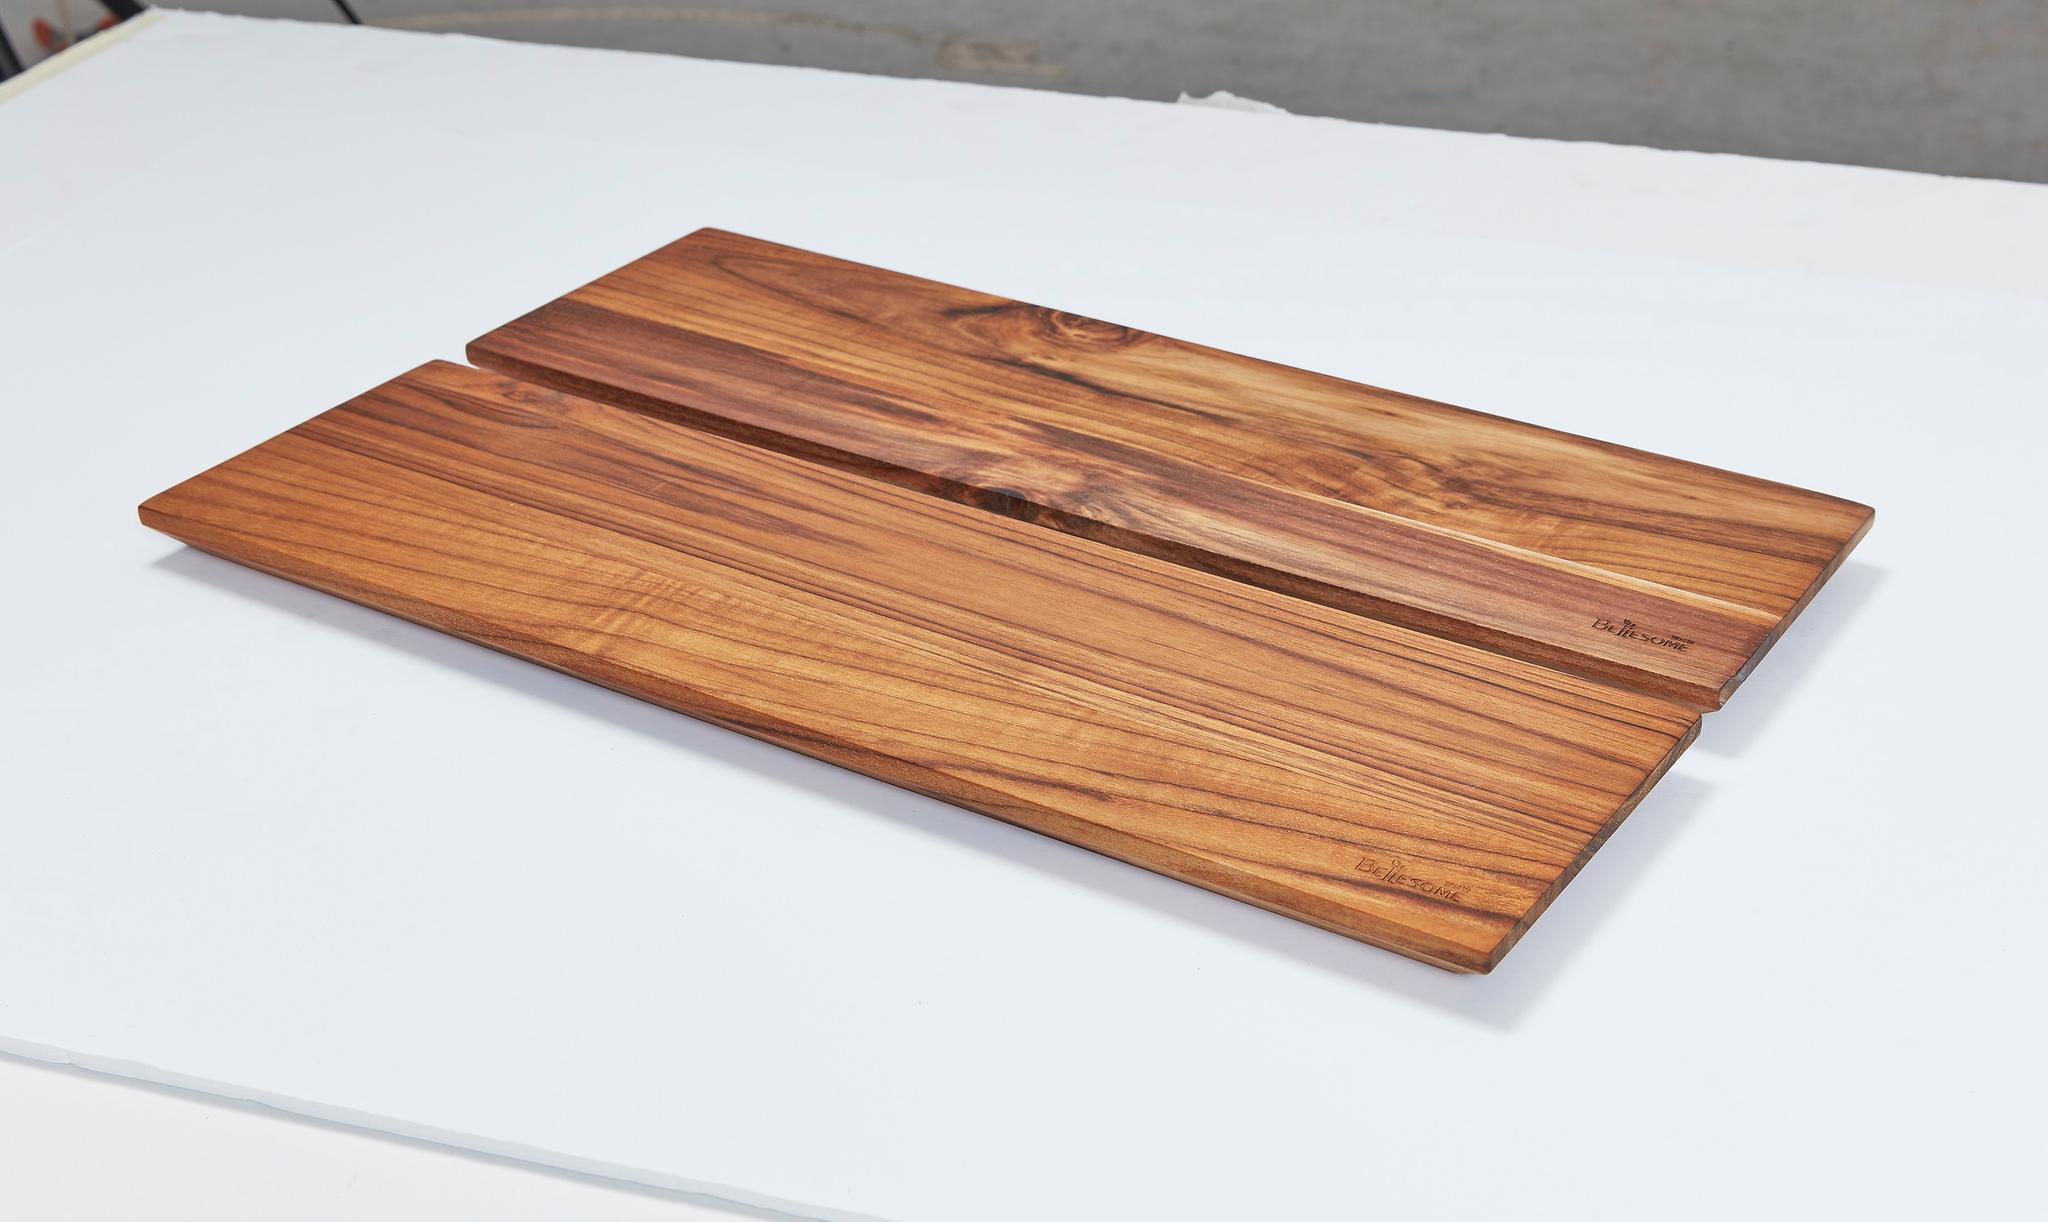 천연목재 플레이트 도마 제품 네 번째 큰 사진